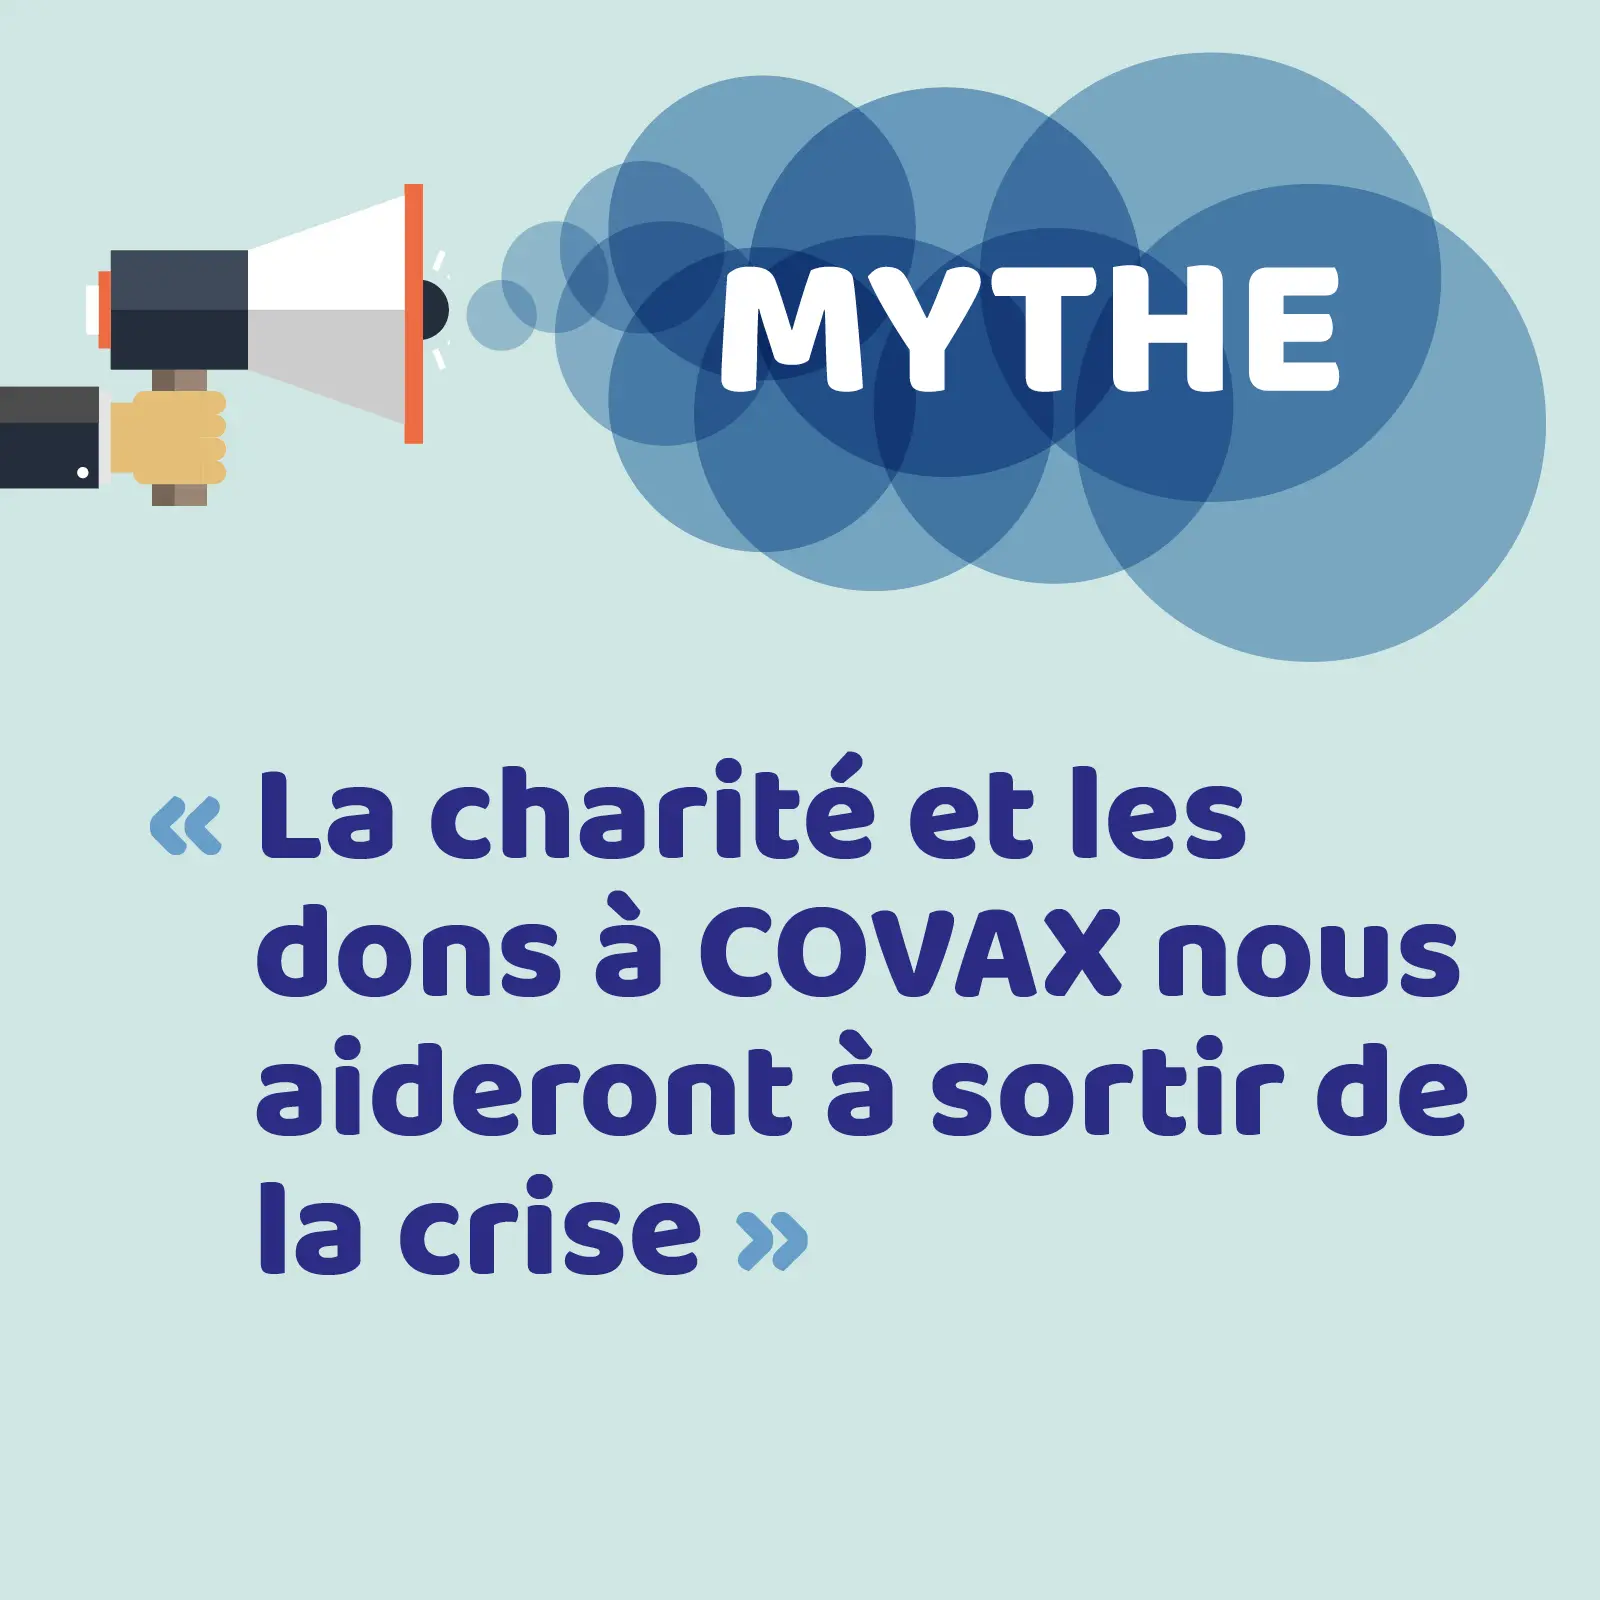 mythes visual_9_FR_mythe6-charite